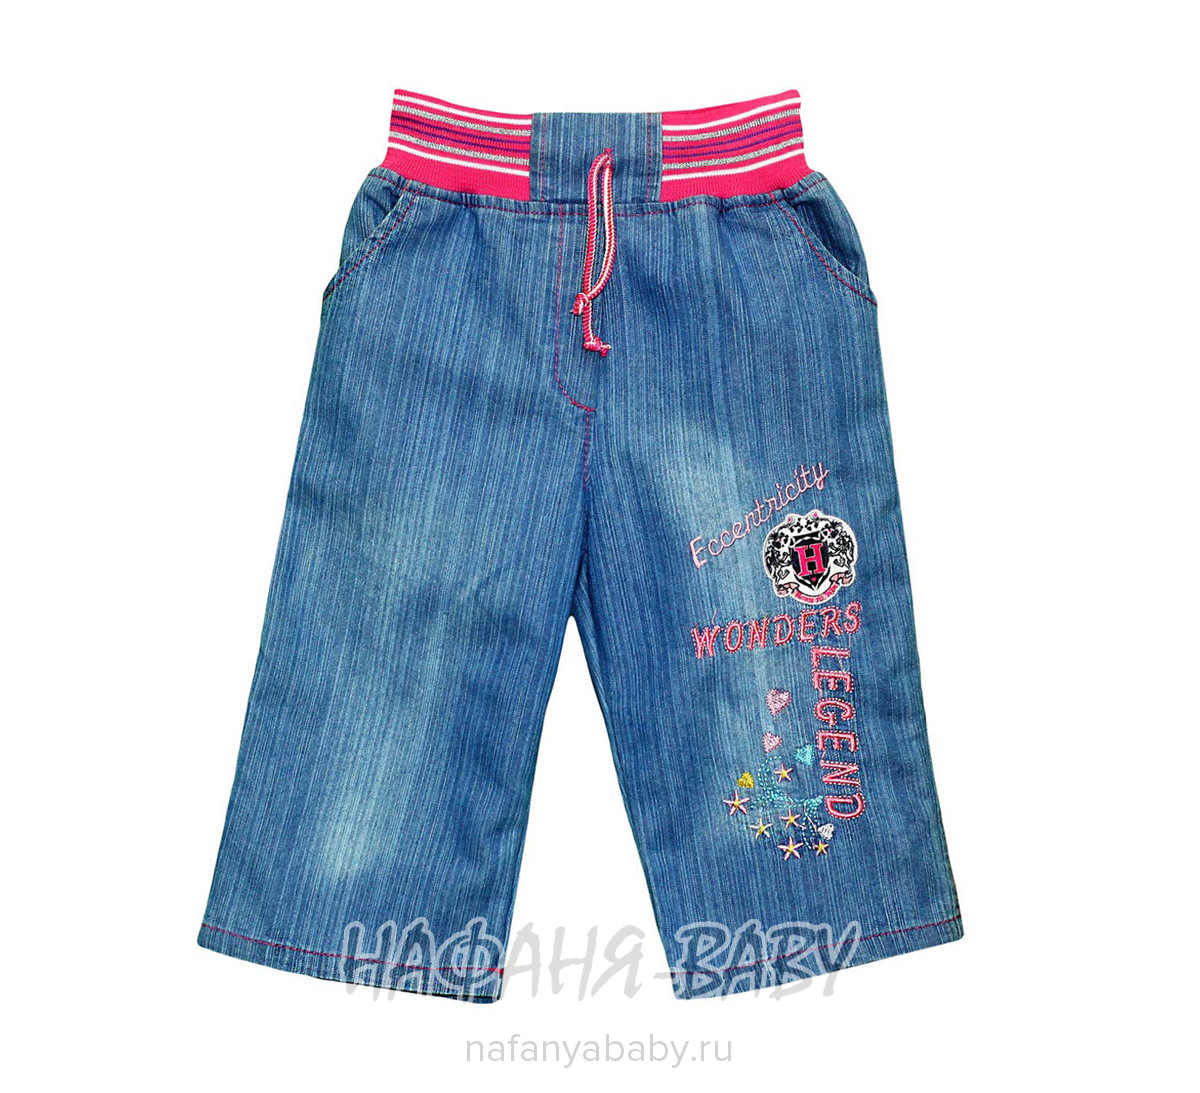 Детские джинсовые капри MUCO, купить в интернет магазине Нафаня. арт: 1417.